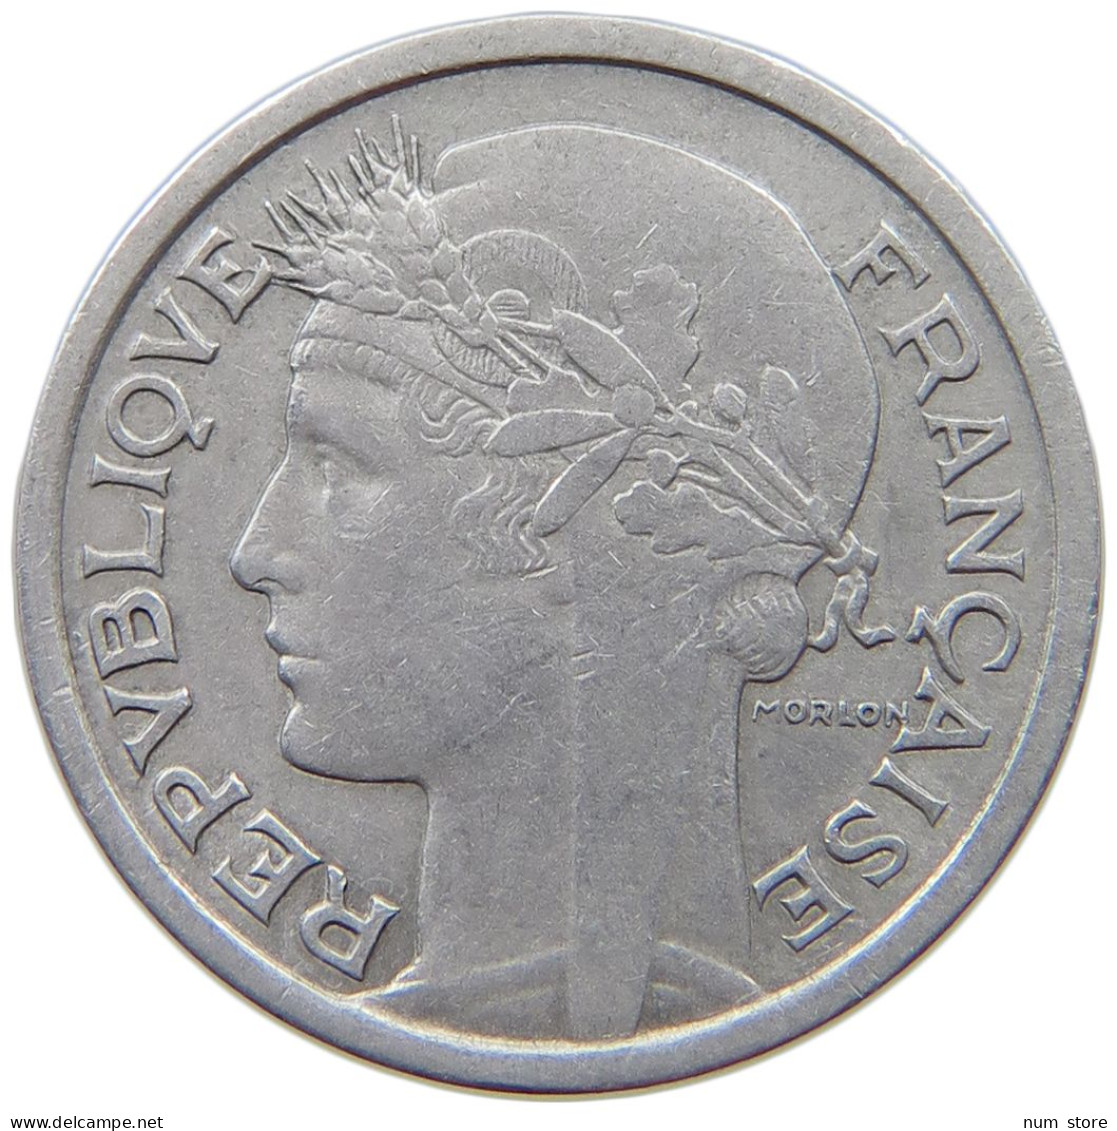 FRANCE 1 FRANC 1958 #a021 0961 - 1 Franc